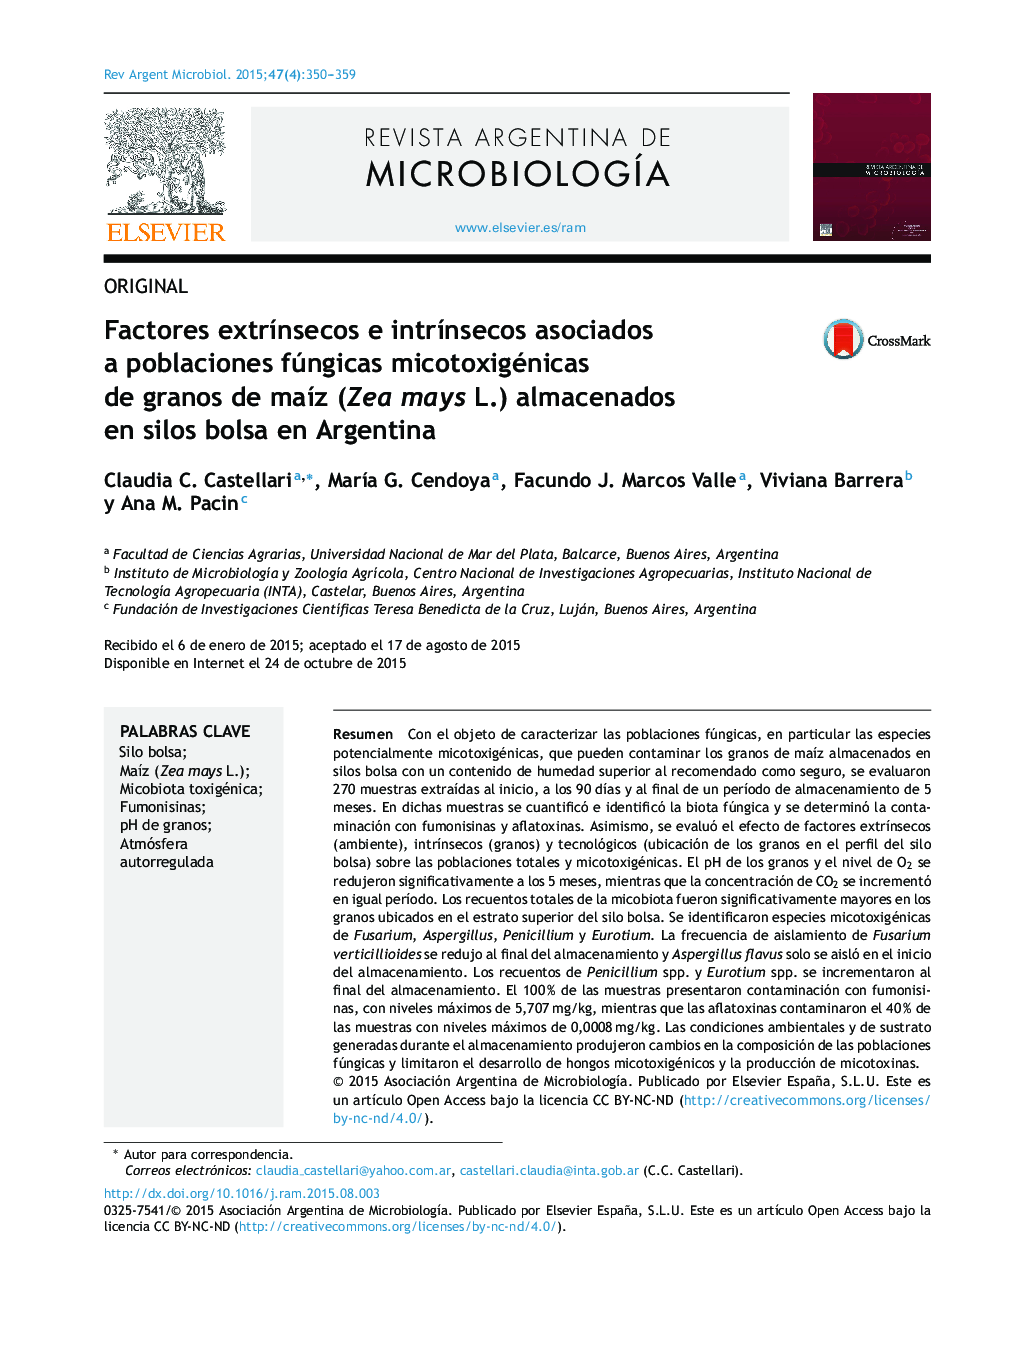 Factores extrínsecos e intrínsecos asociados a poblaciones fúngicas micotoxigénicas de granos de maíz (Zea mays L.) almacenados en silos bolsa en Argentina